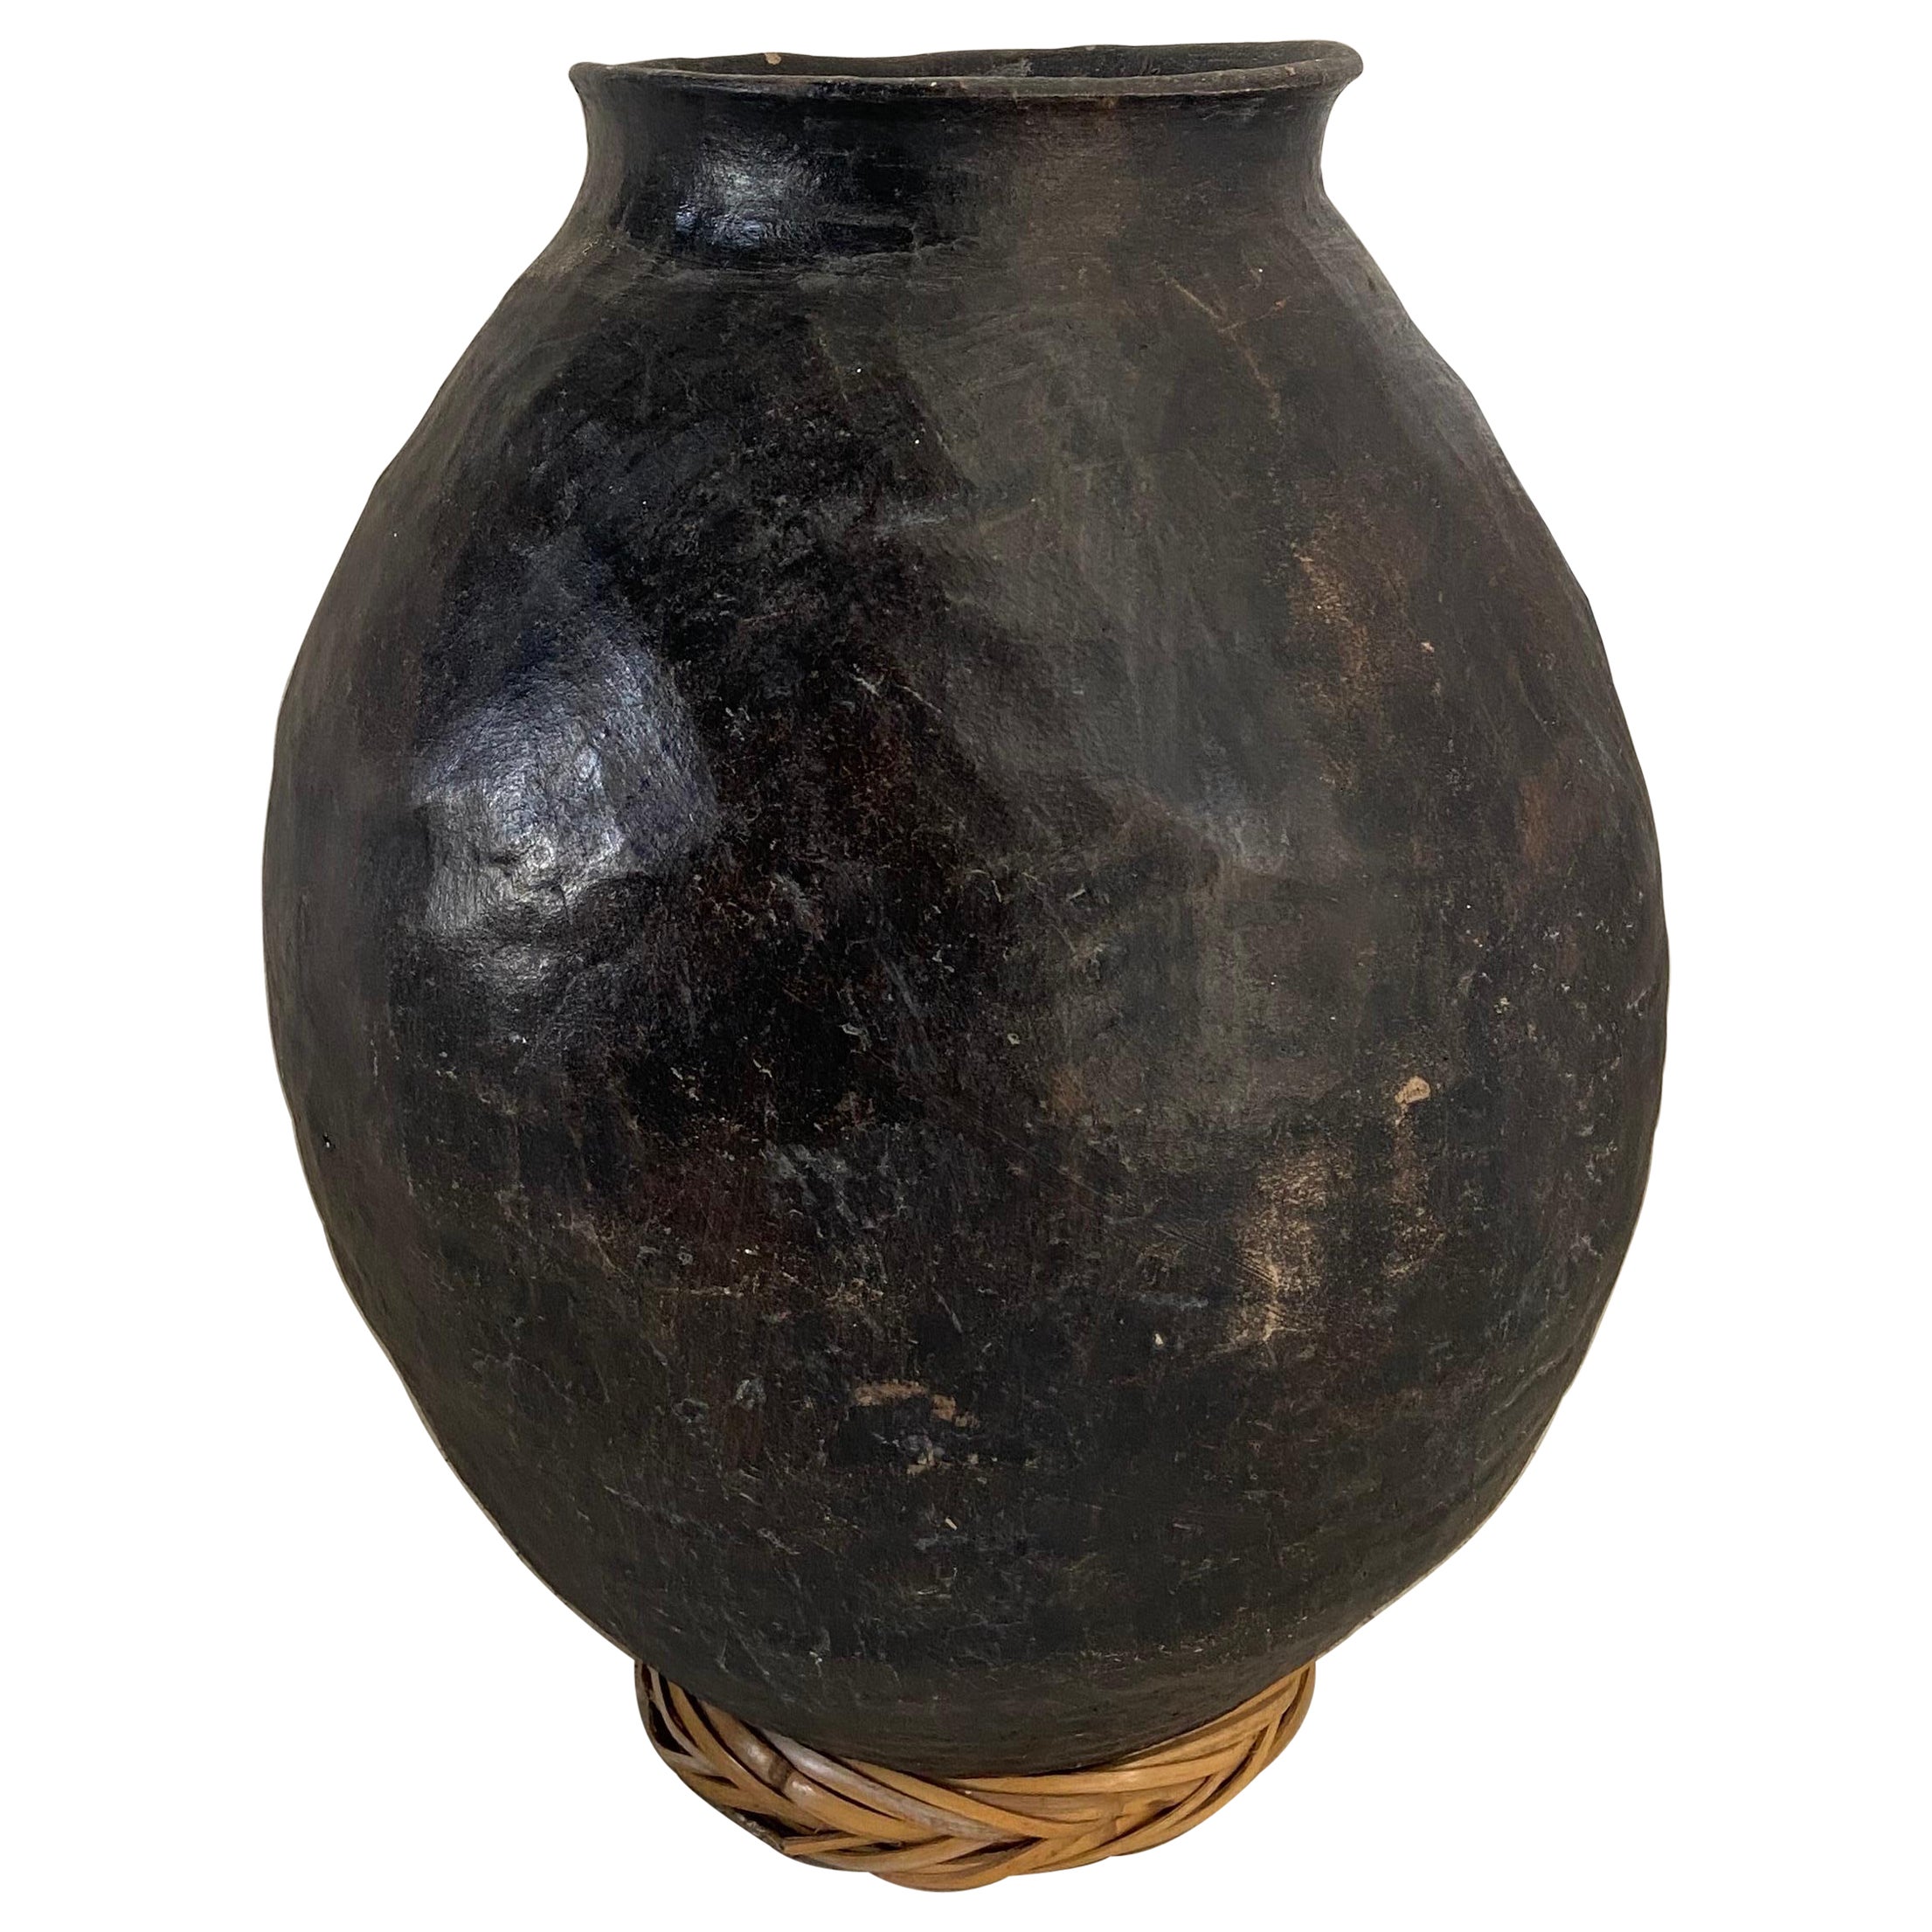 Tarahumara Ceramic Water Vessel from Mexico, circa Early 1900s